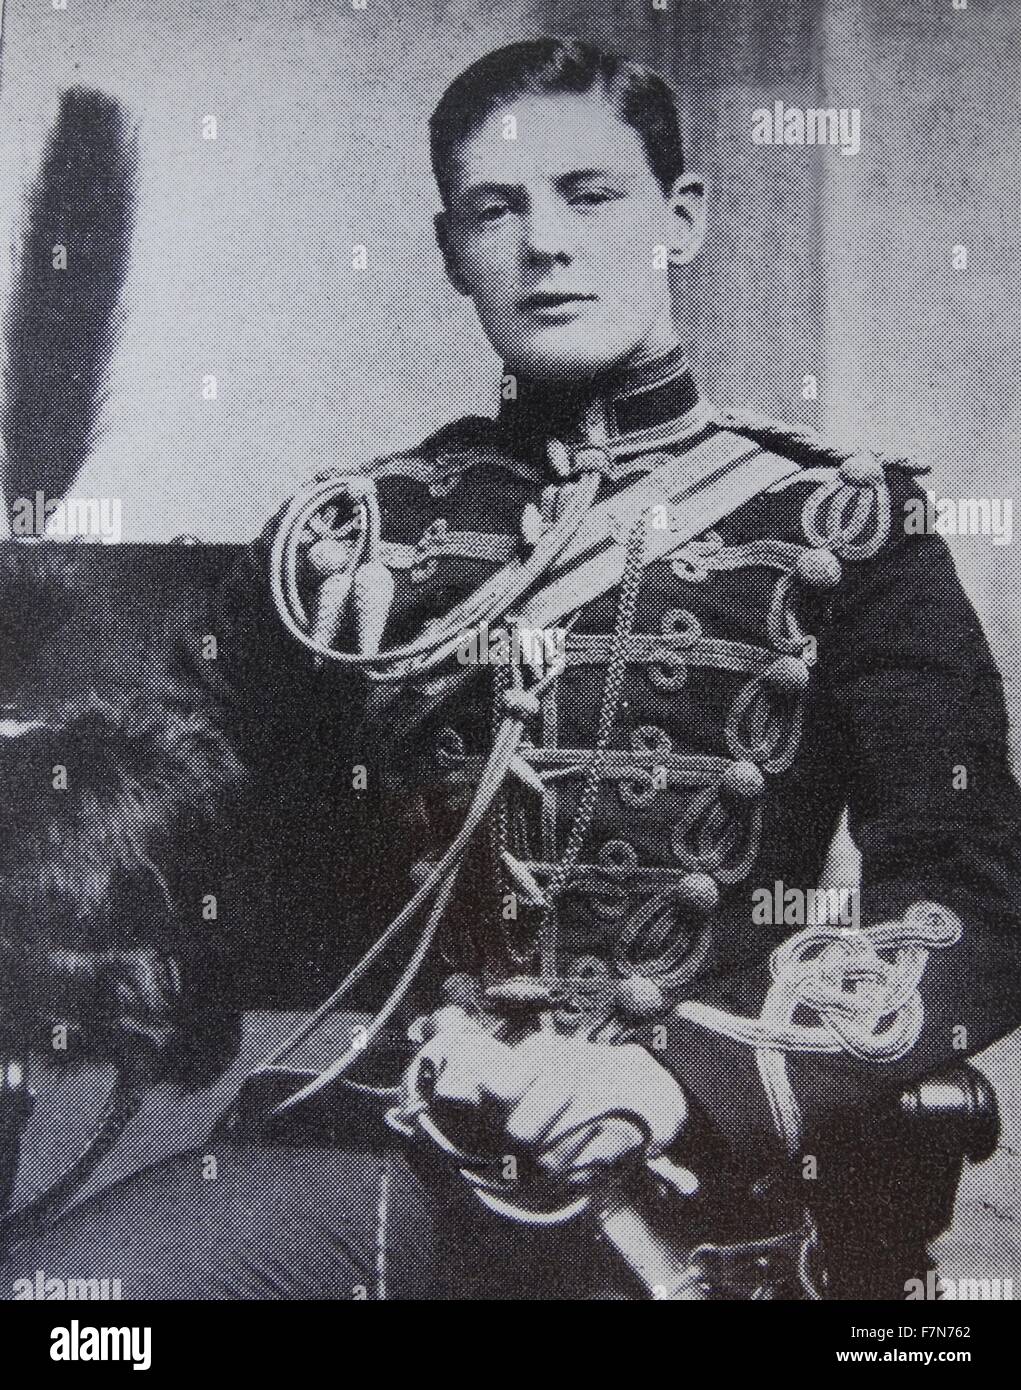 Winston Churchill militärische uniform, 1895. Churchill (1874-1965) Premierminister des Vereinigten Königreichs von 1940 bis 1945. Stockfoto